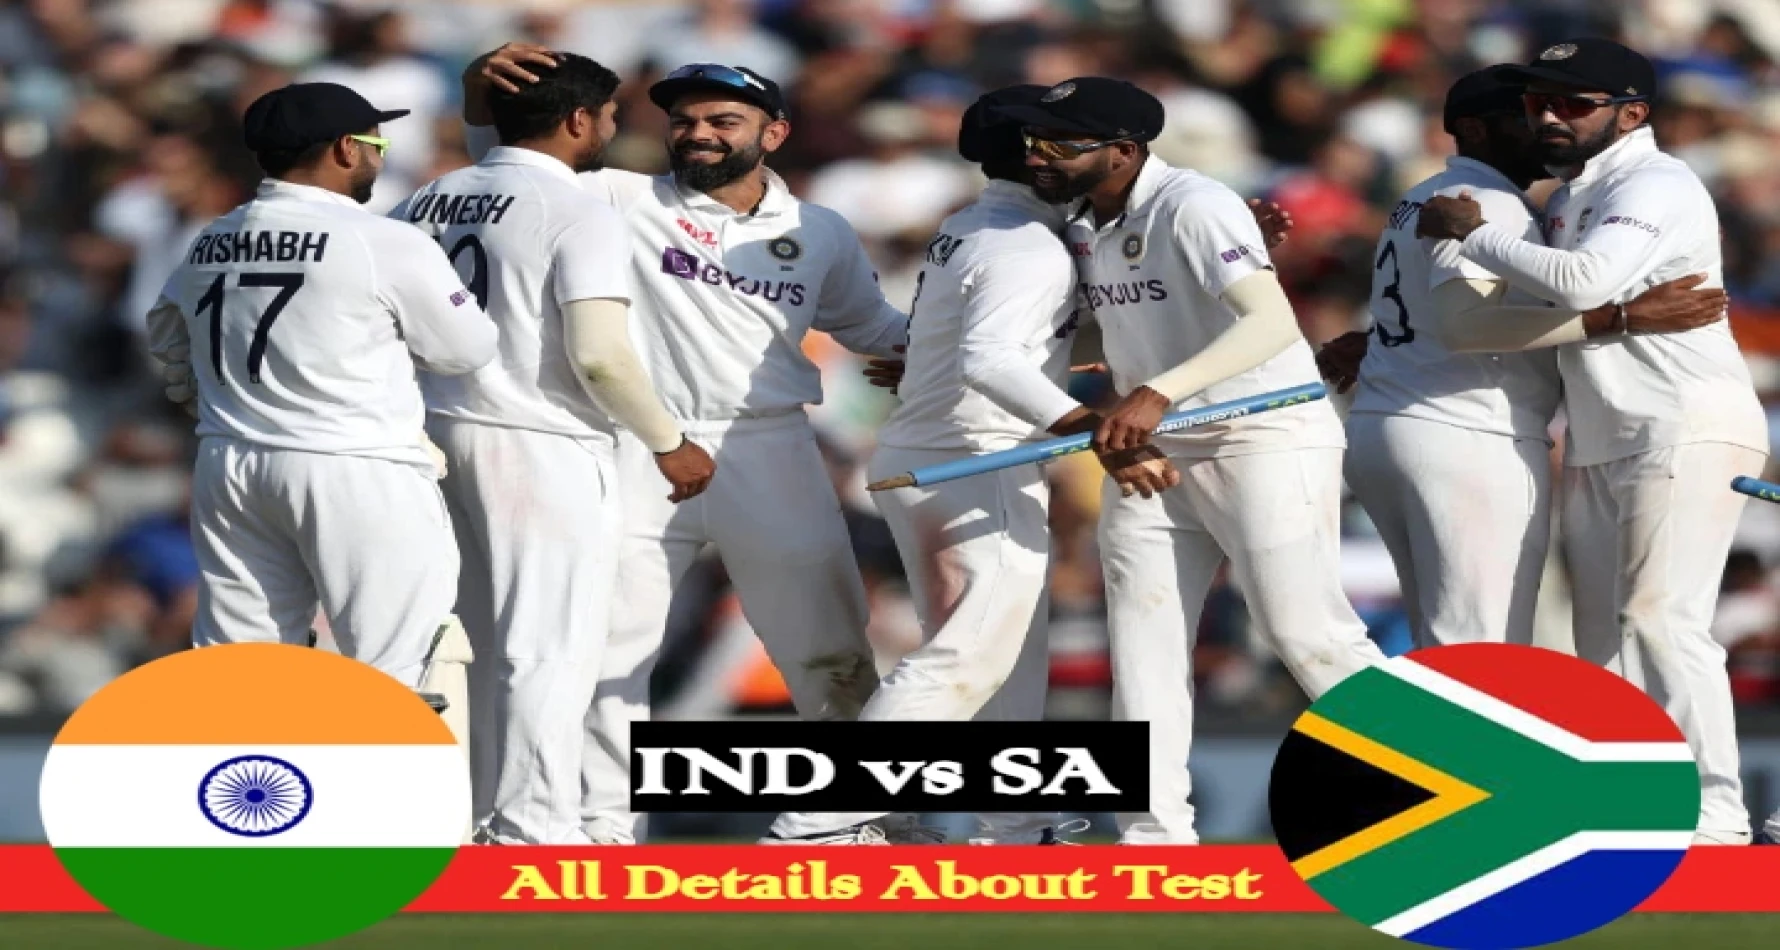 IND vs SA 1st Test: भारत बनाम दक्षिण अफ्रीका का पहला टेस्ट मैच कब होगा शुरू, वेन्यू, स्क्वाड  और तीनों सेशन की विस्तार से जानकारी